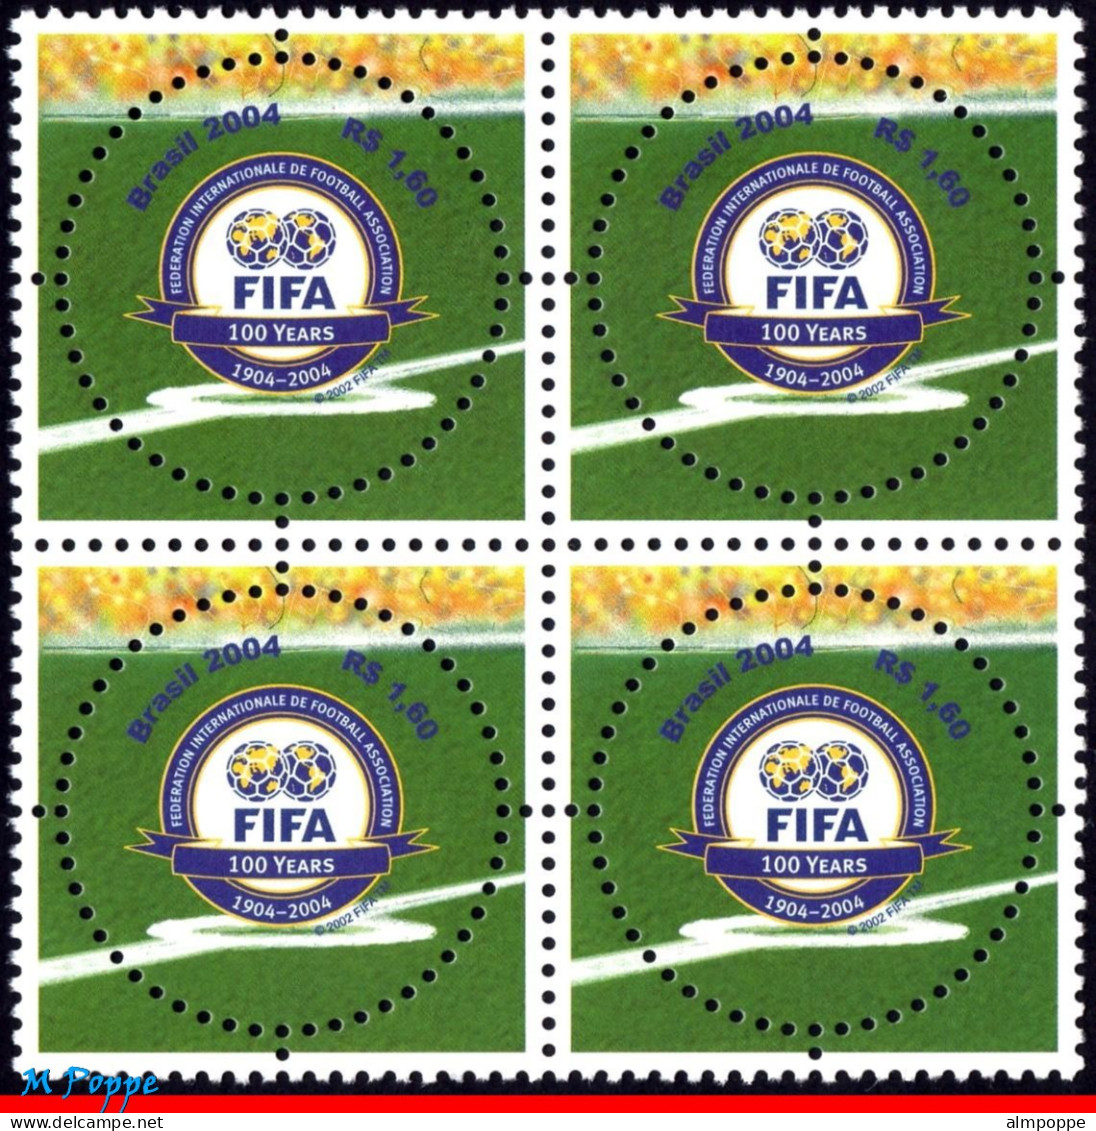 Ref. BR-2924-Q BRAZIL 2004 - FIFA CENTENARY, SPORT,MI# 3357, BLOCK MNH, FOOTBALL SOCCER 4V Sc# 2924 - Blocks & Sheetlets